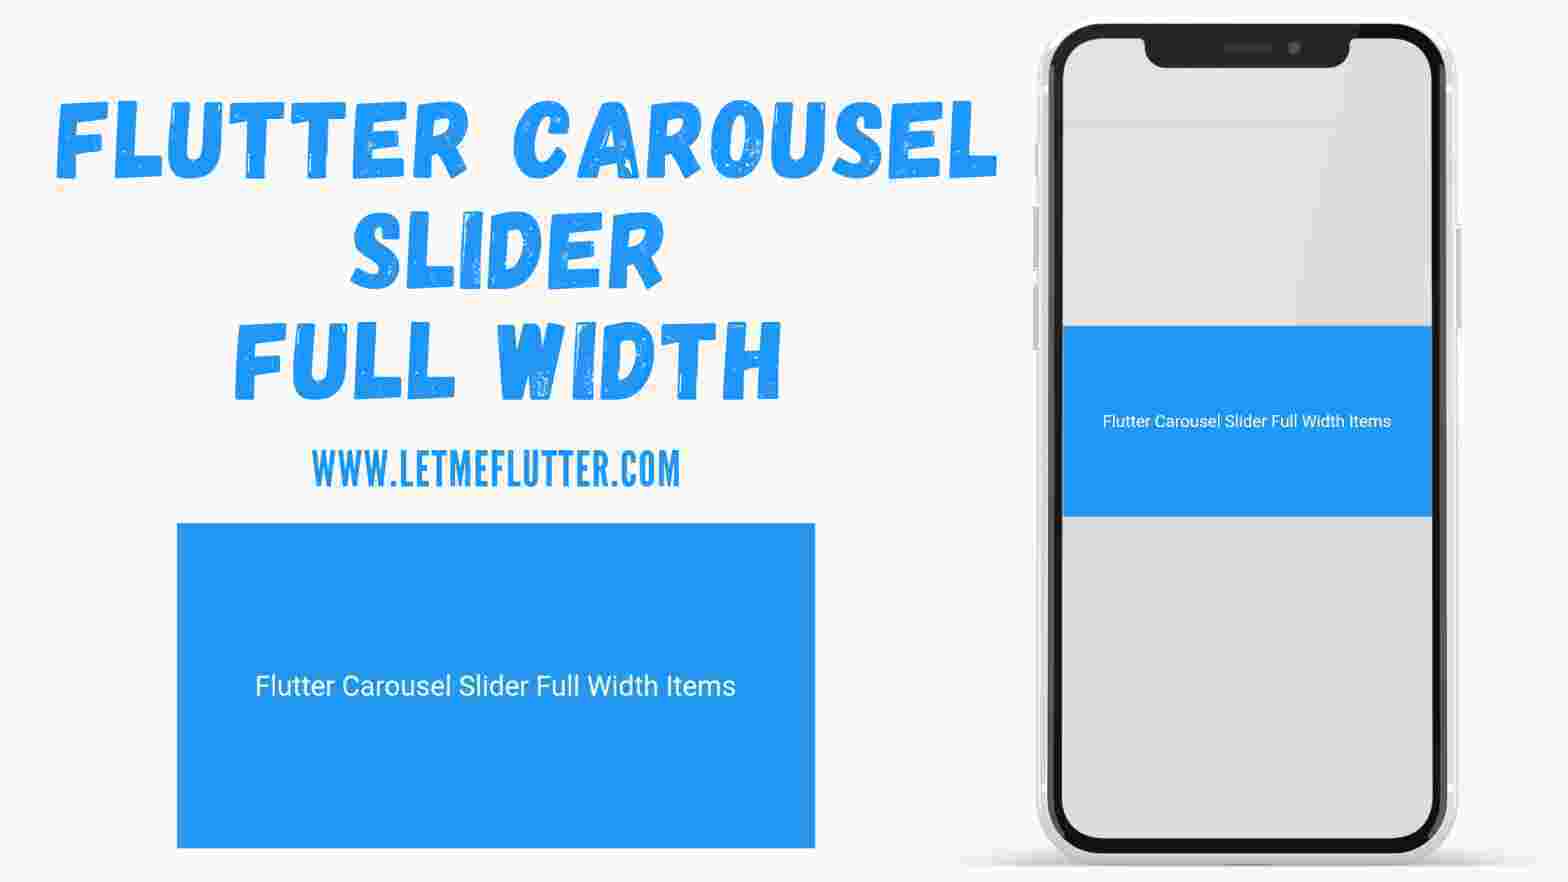 flutter carousel slider full width